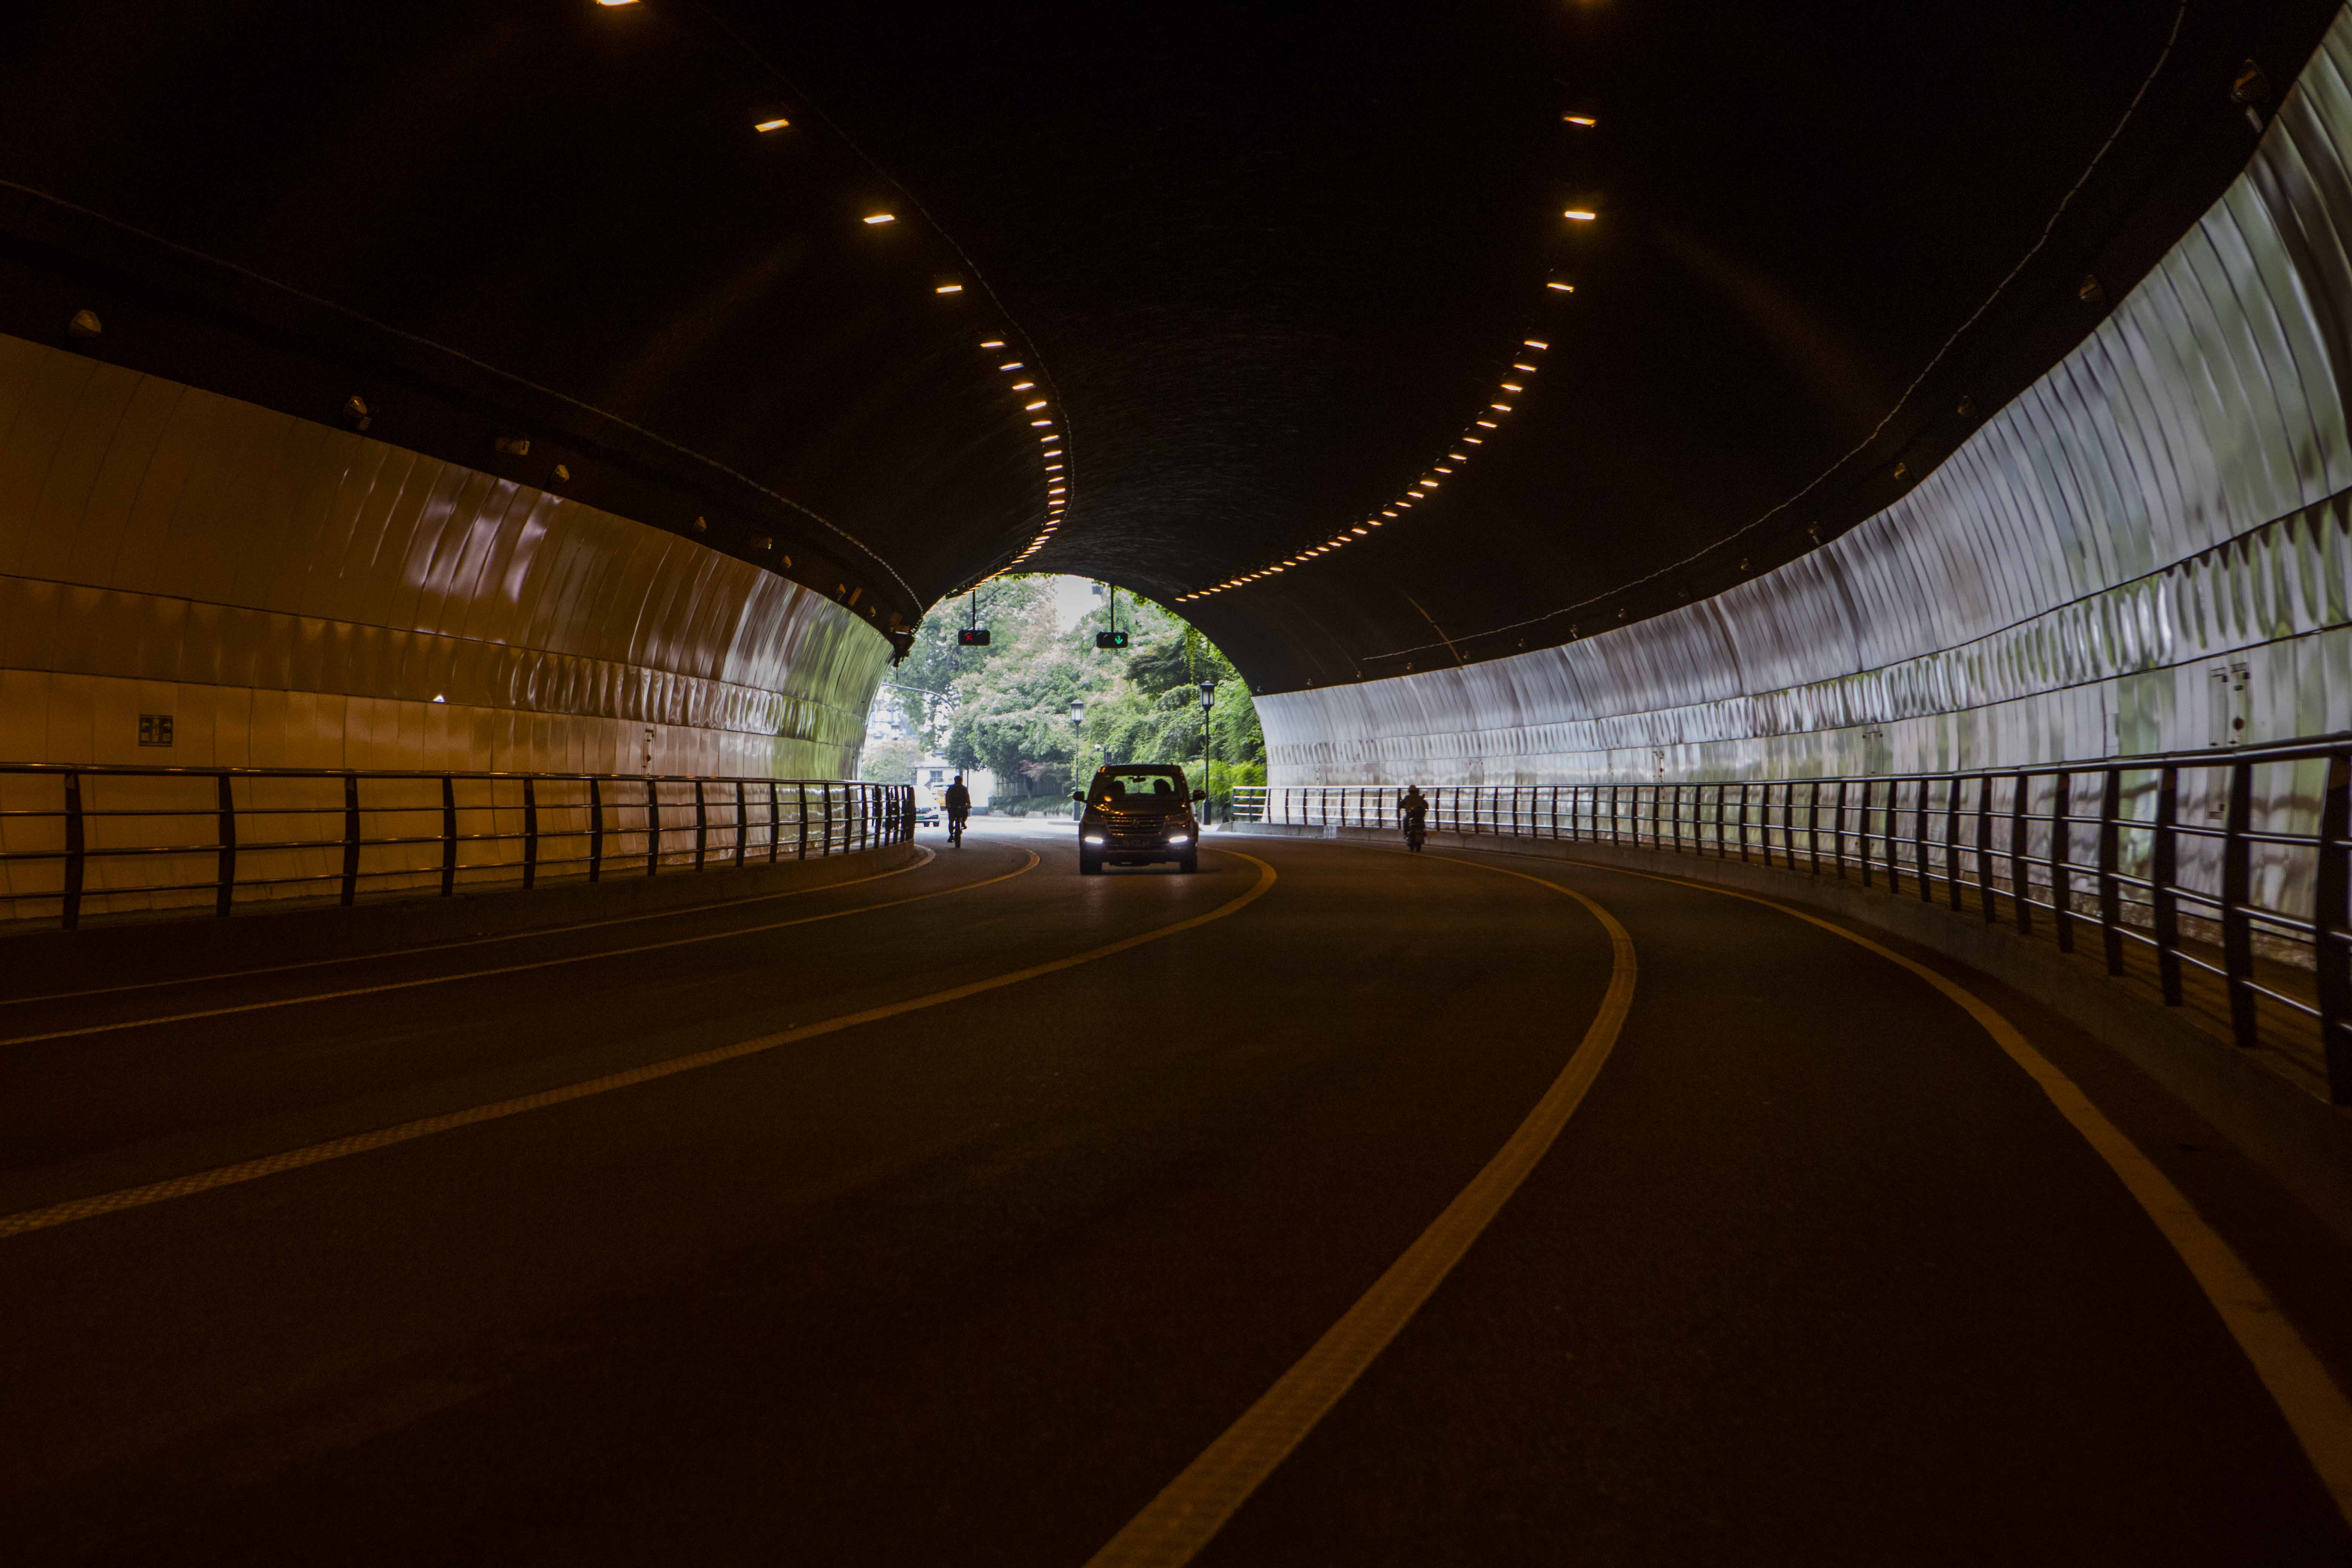 塘岭隧道图片